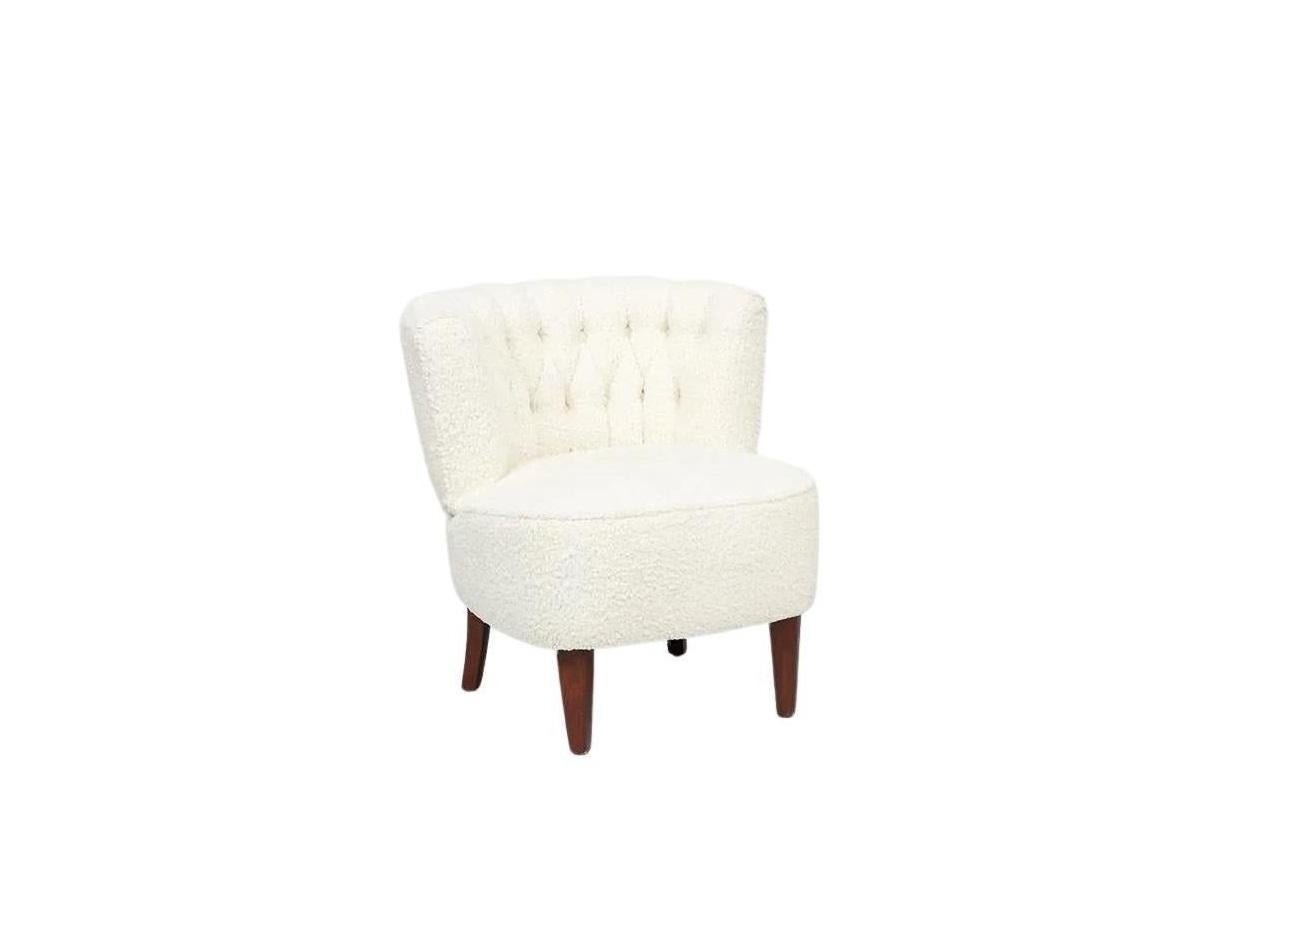 Schönes Paar Sessel aus den 1950er Jahren von Otto Schultz, Schweden. Die eleganten, organischen Linien des Designs schaffen eine markante Silhouette. Die großzügig geschwungene Rückenlehne ist mit rautenförmigen Knöpfen versehen und folgt den